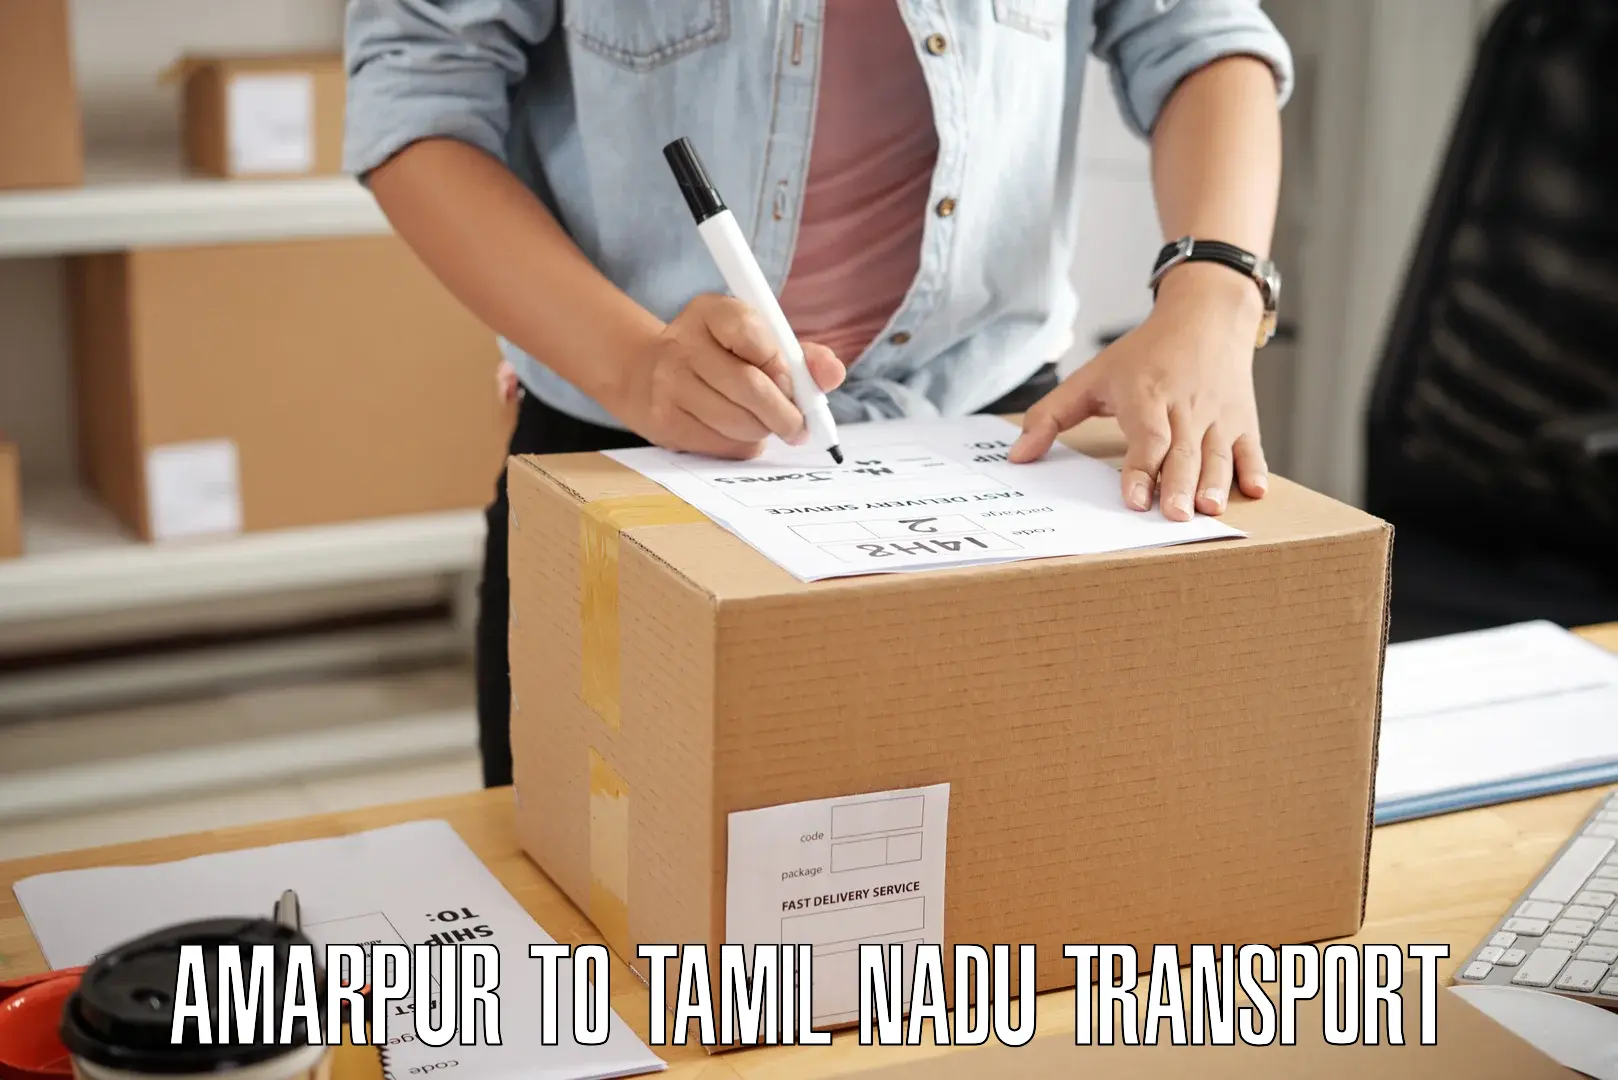 Furniture transport service Amarpur to Perundurai